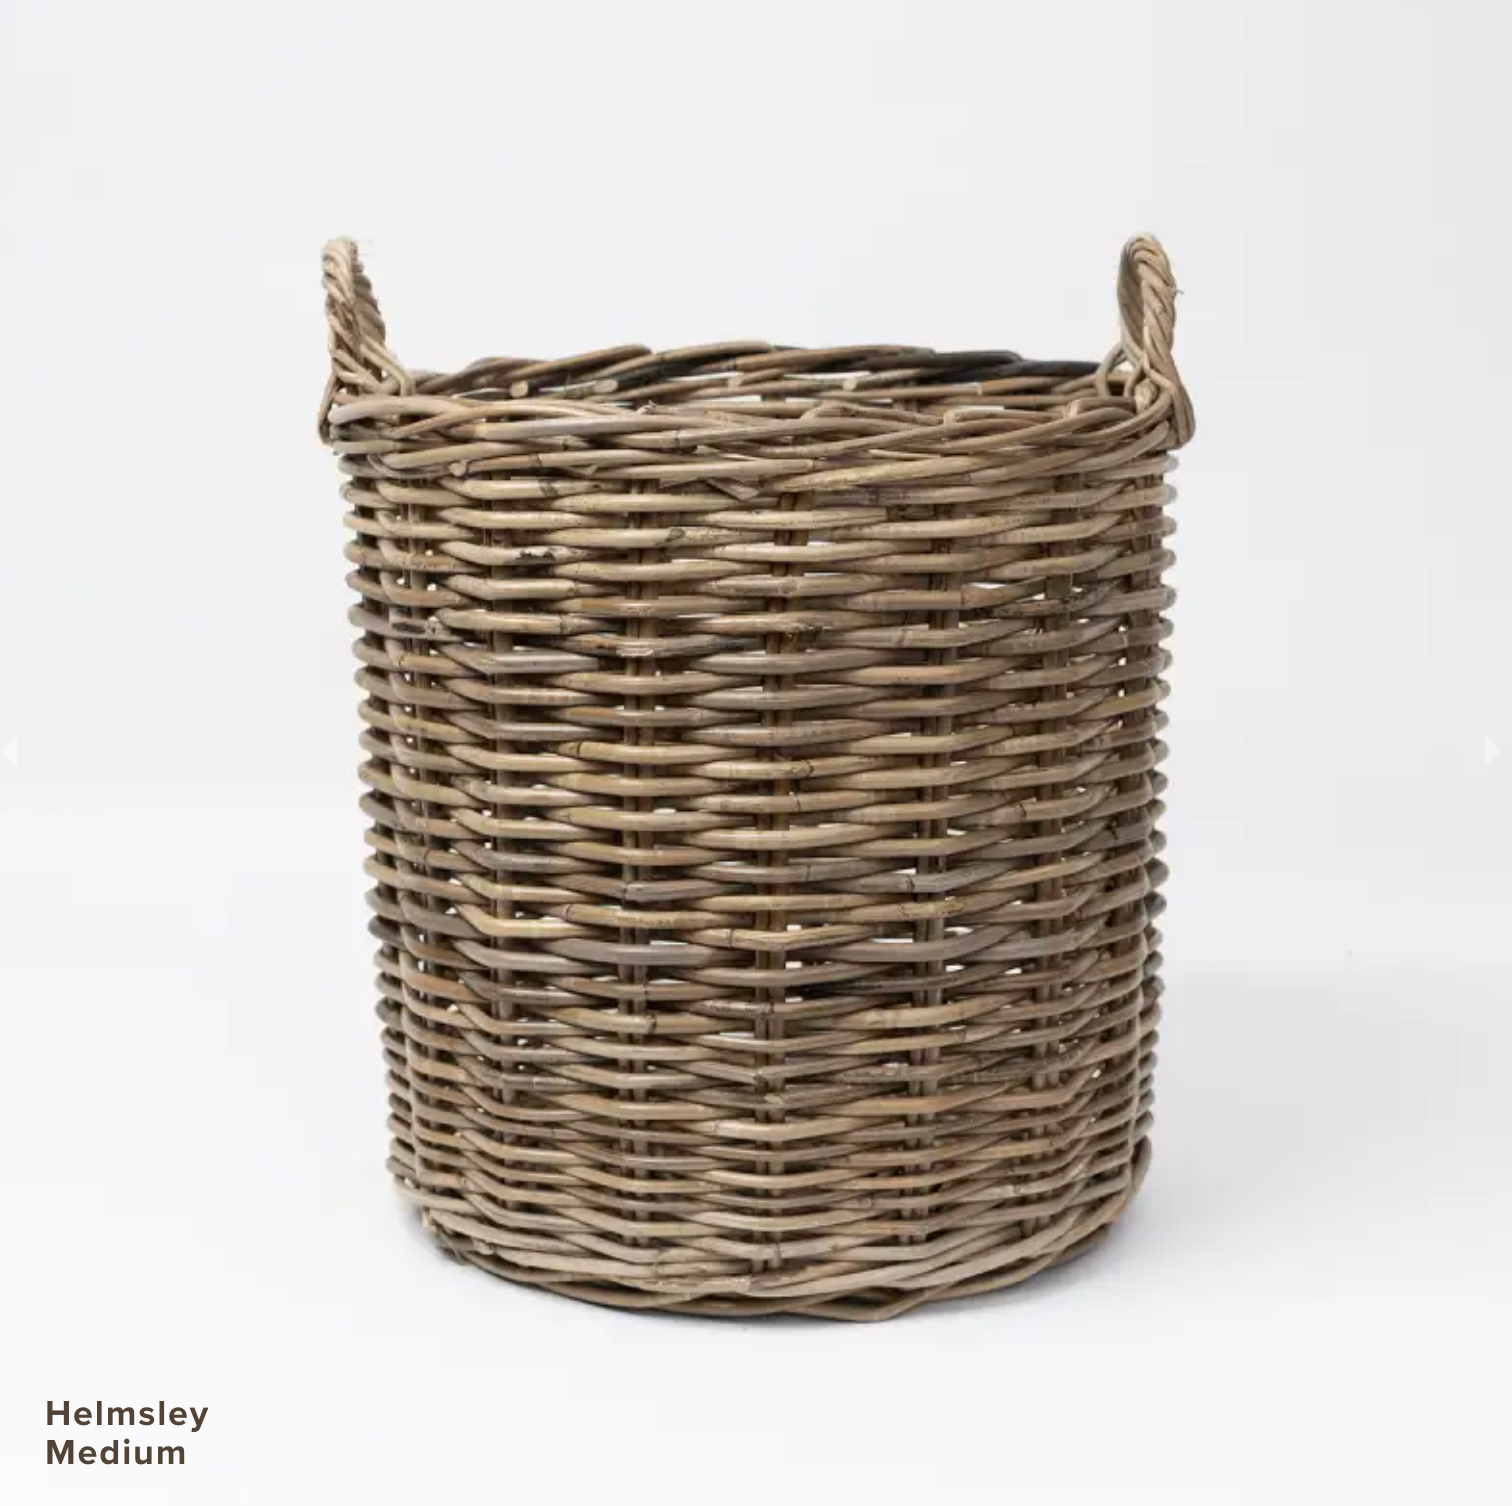 Helmsley Basket